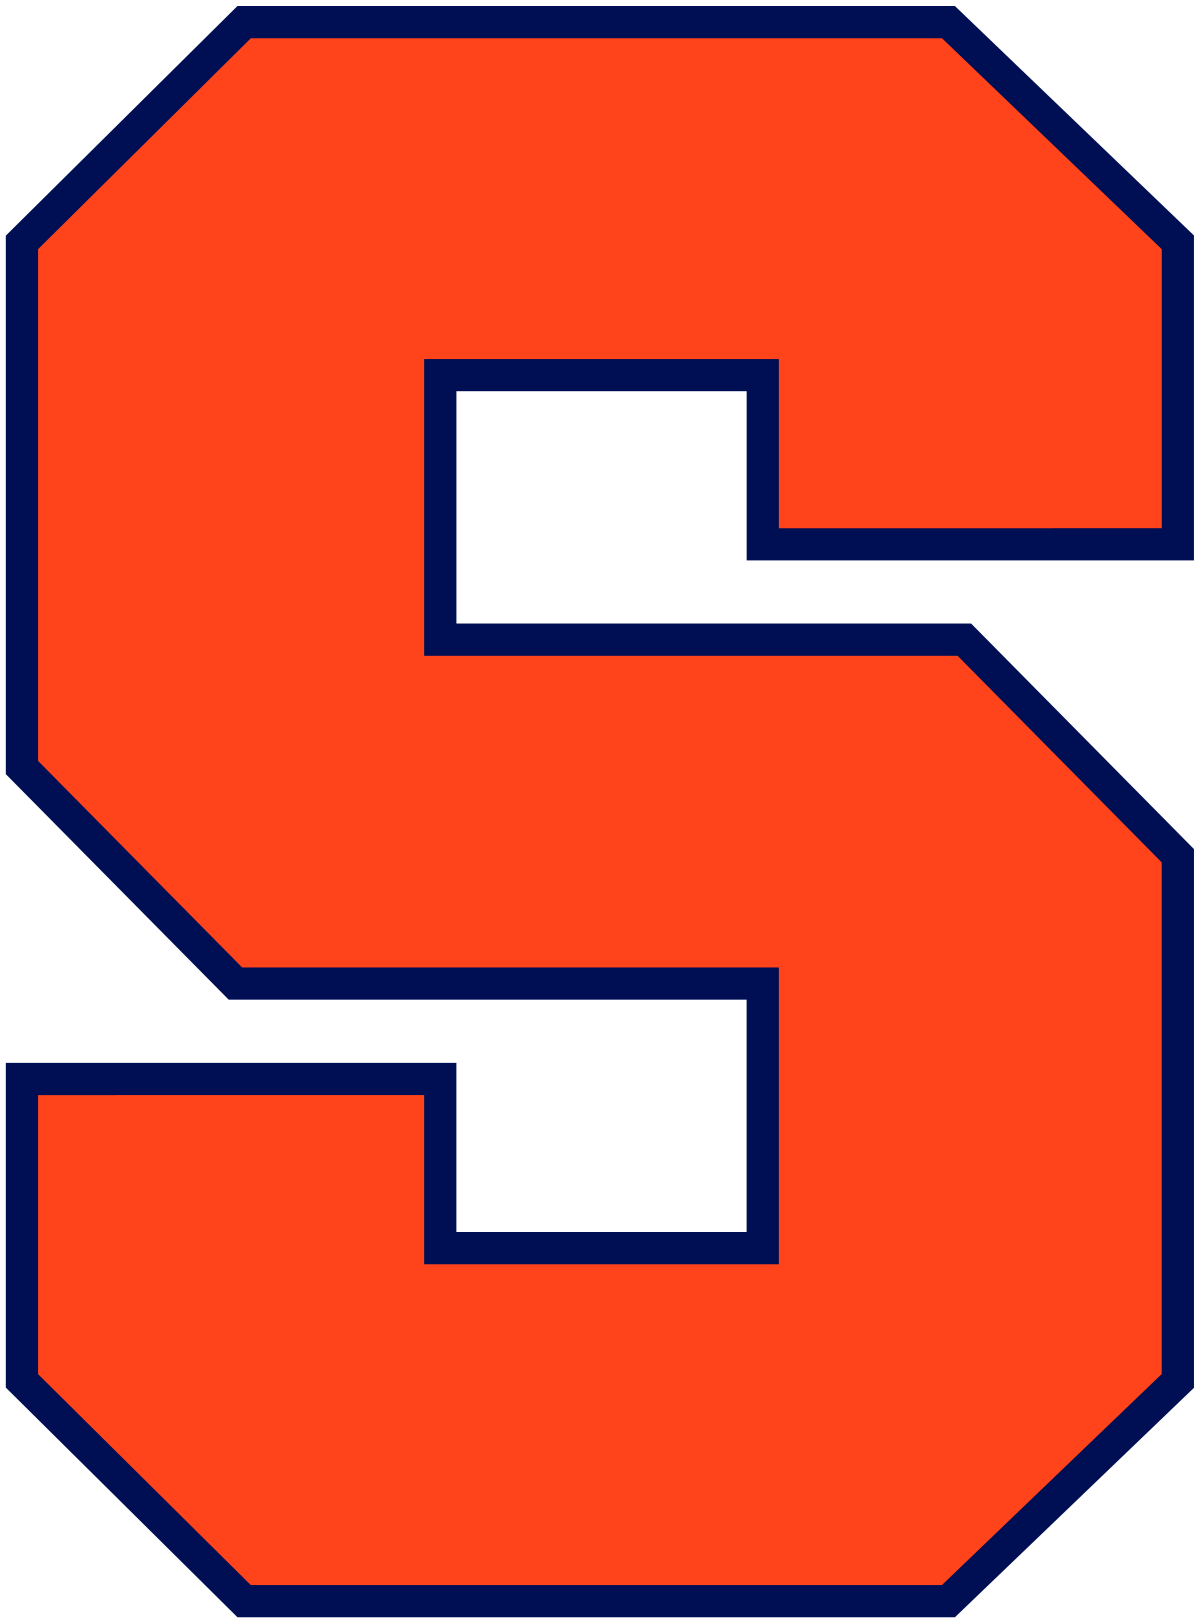 Syracuse Orange football - Wikipedia